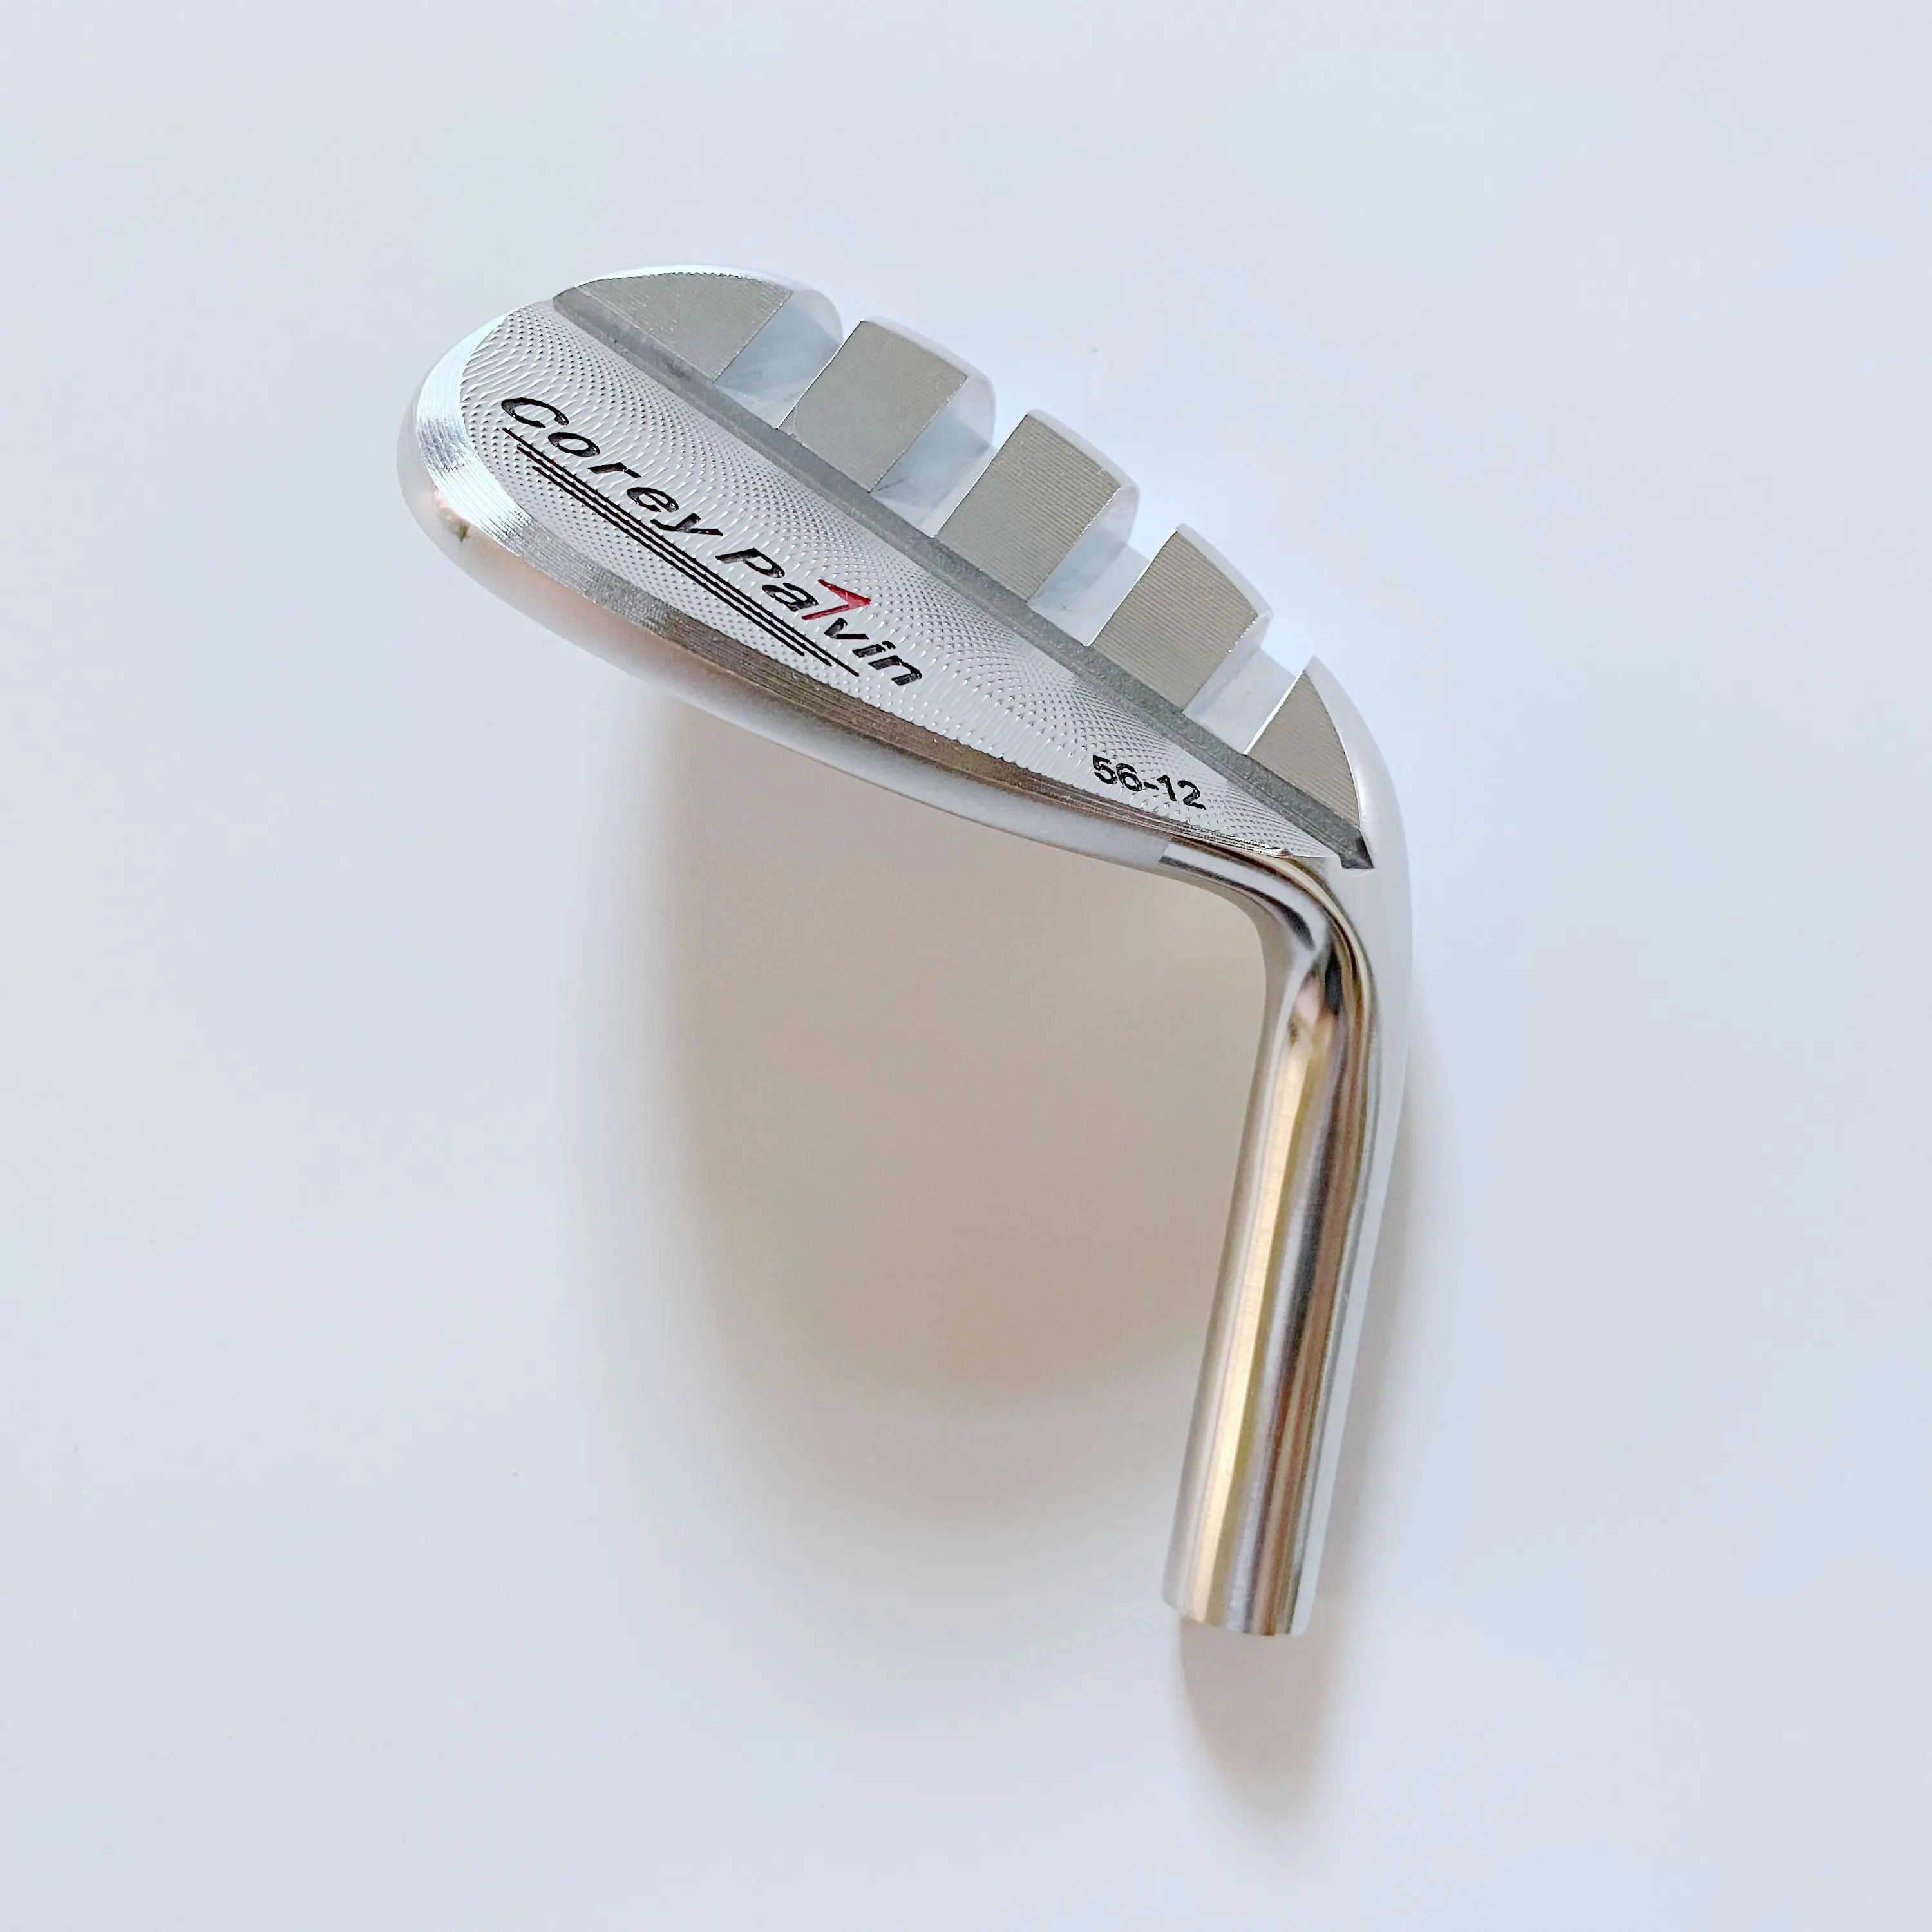 Мягкая железная головка Yihome для клюшек для гольфа, 56, 60 градусов, бесплатная доставка